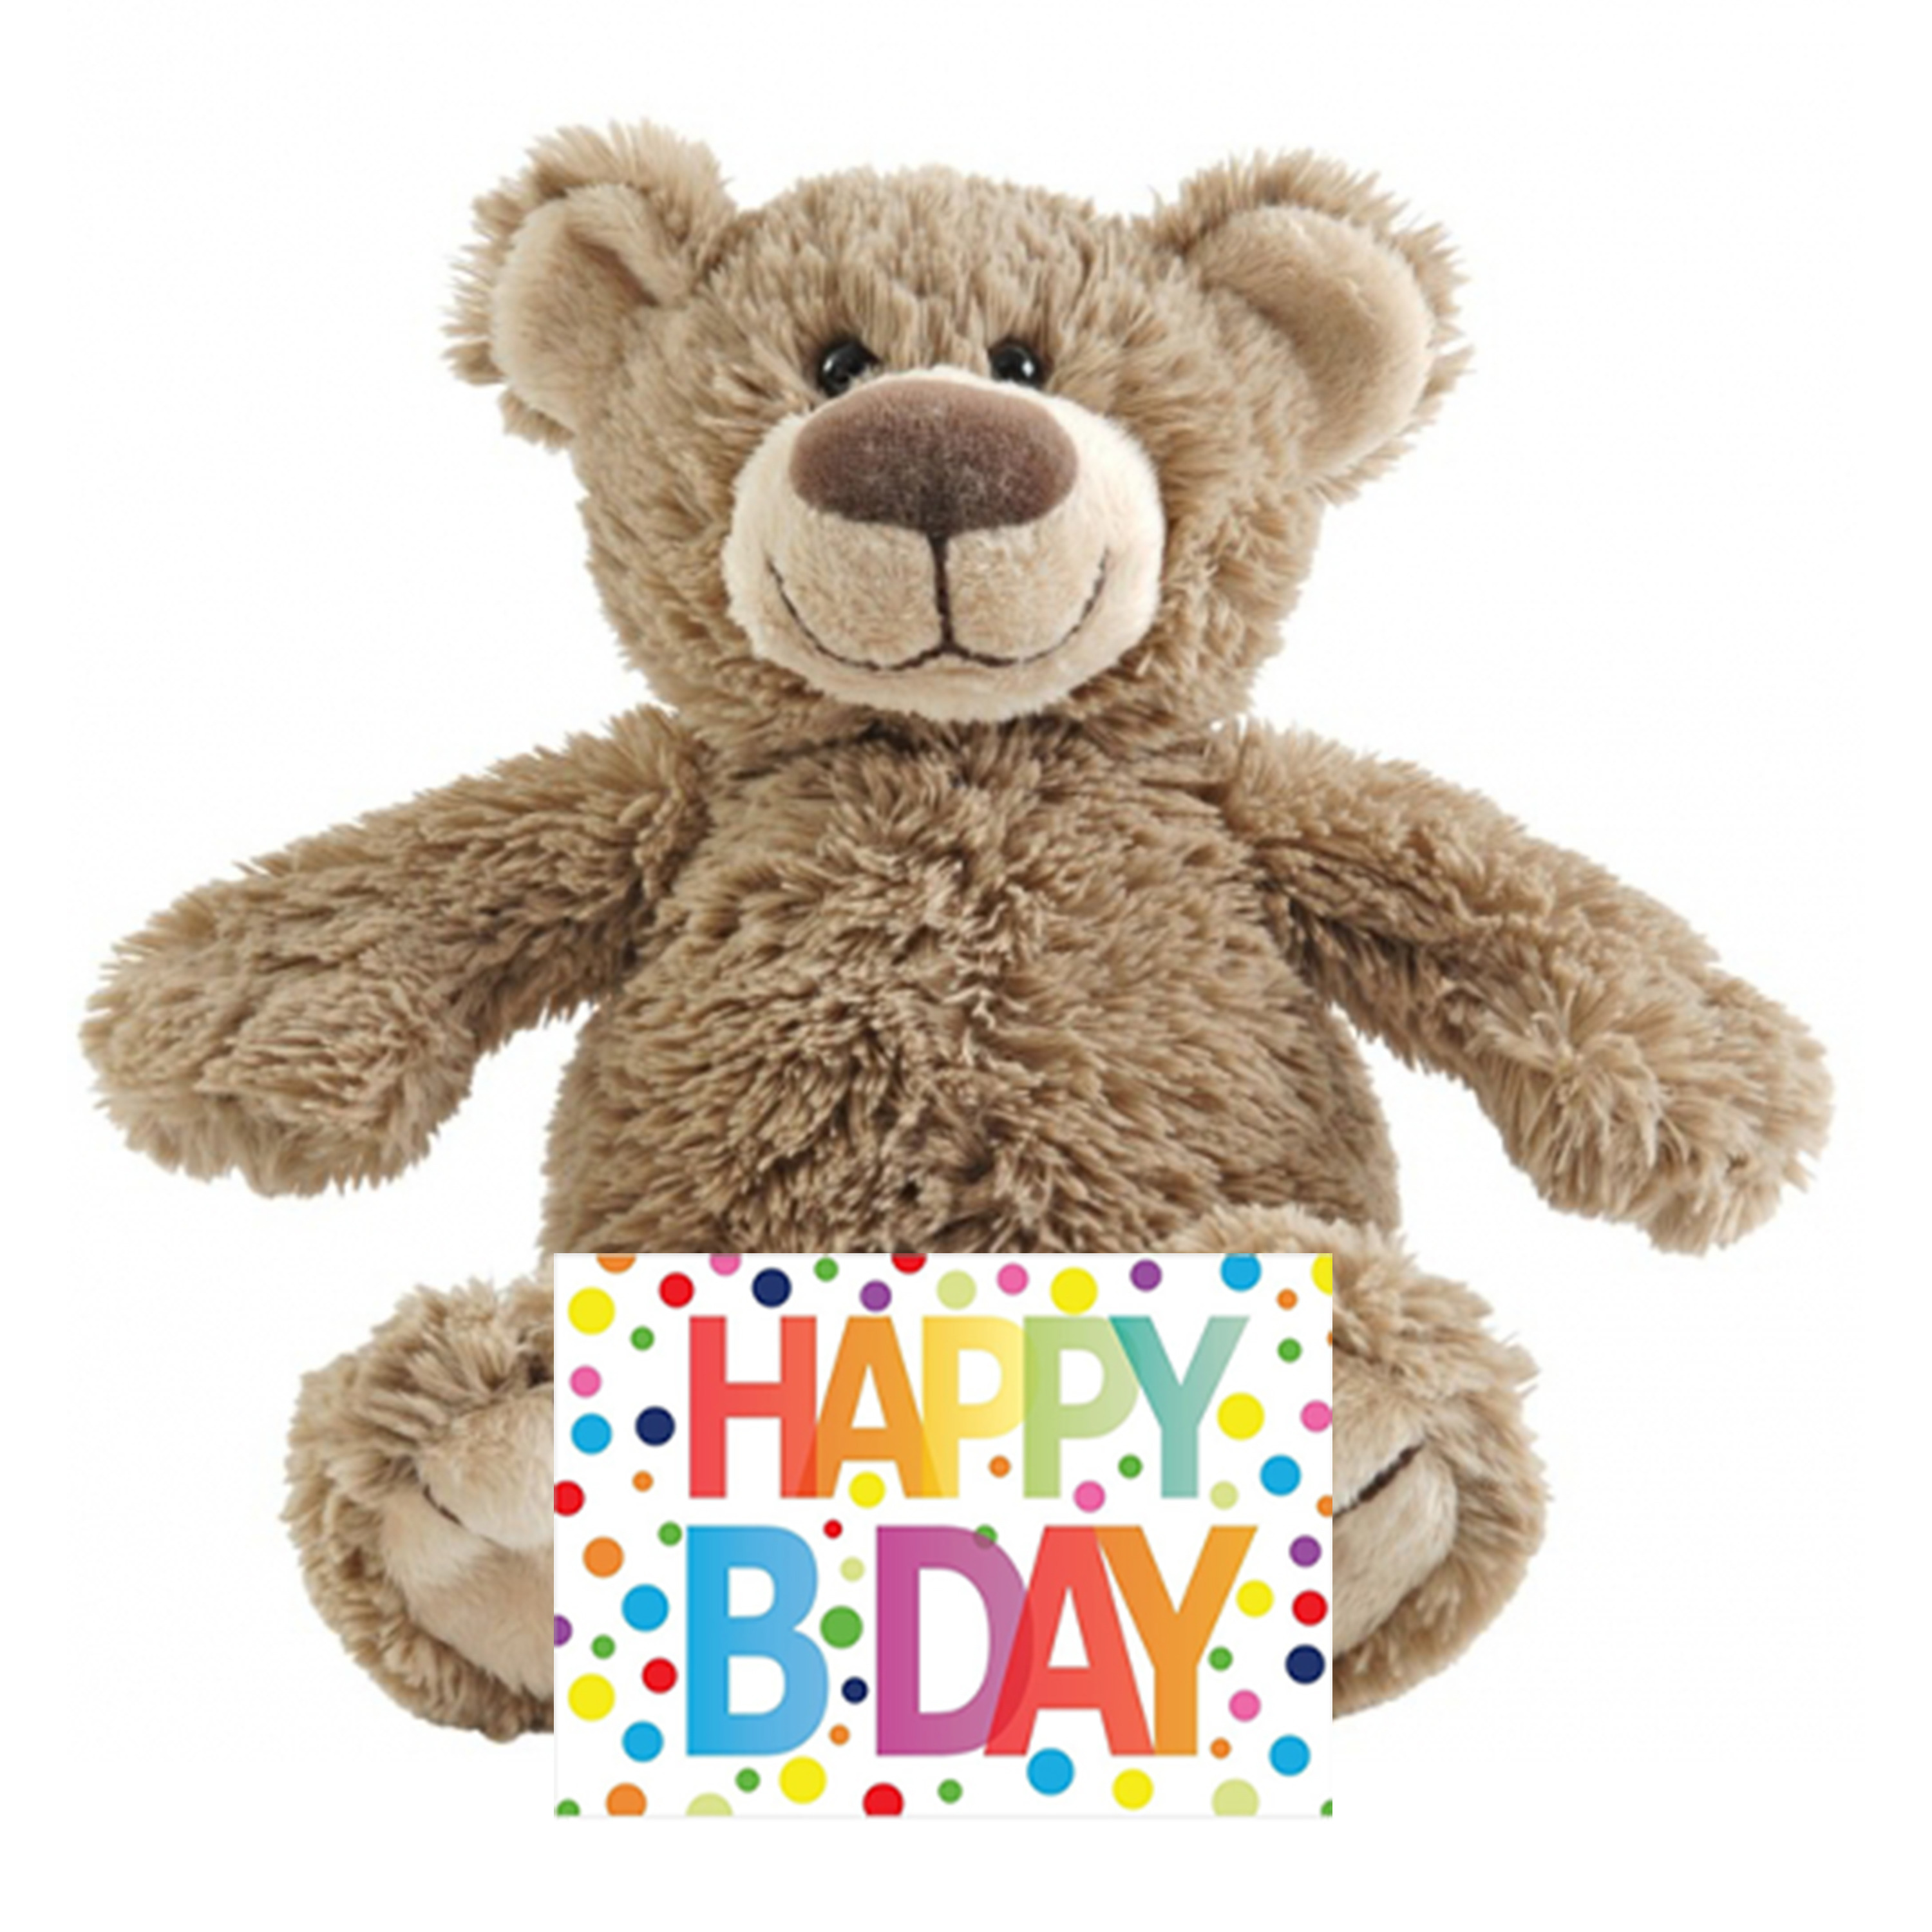 Kinder cadeau knuffelbeer met Happy birthday wenskaart